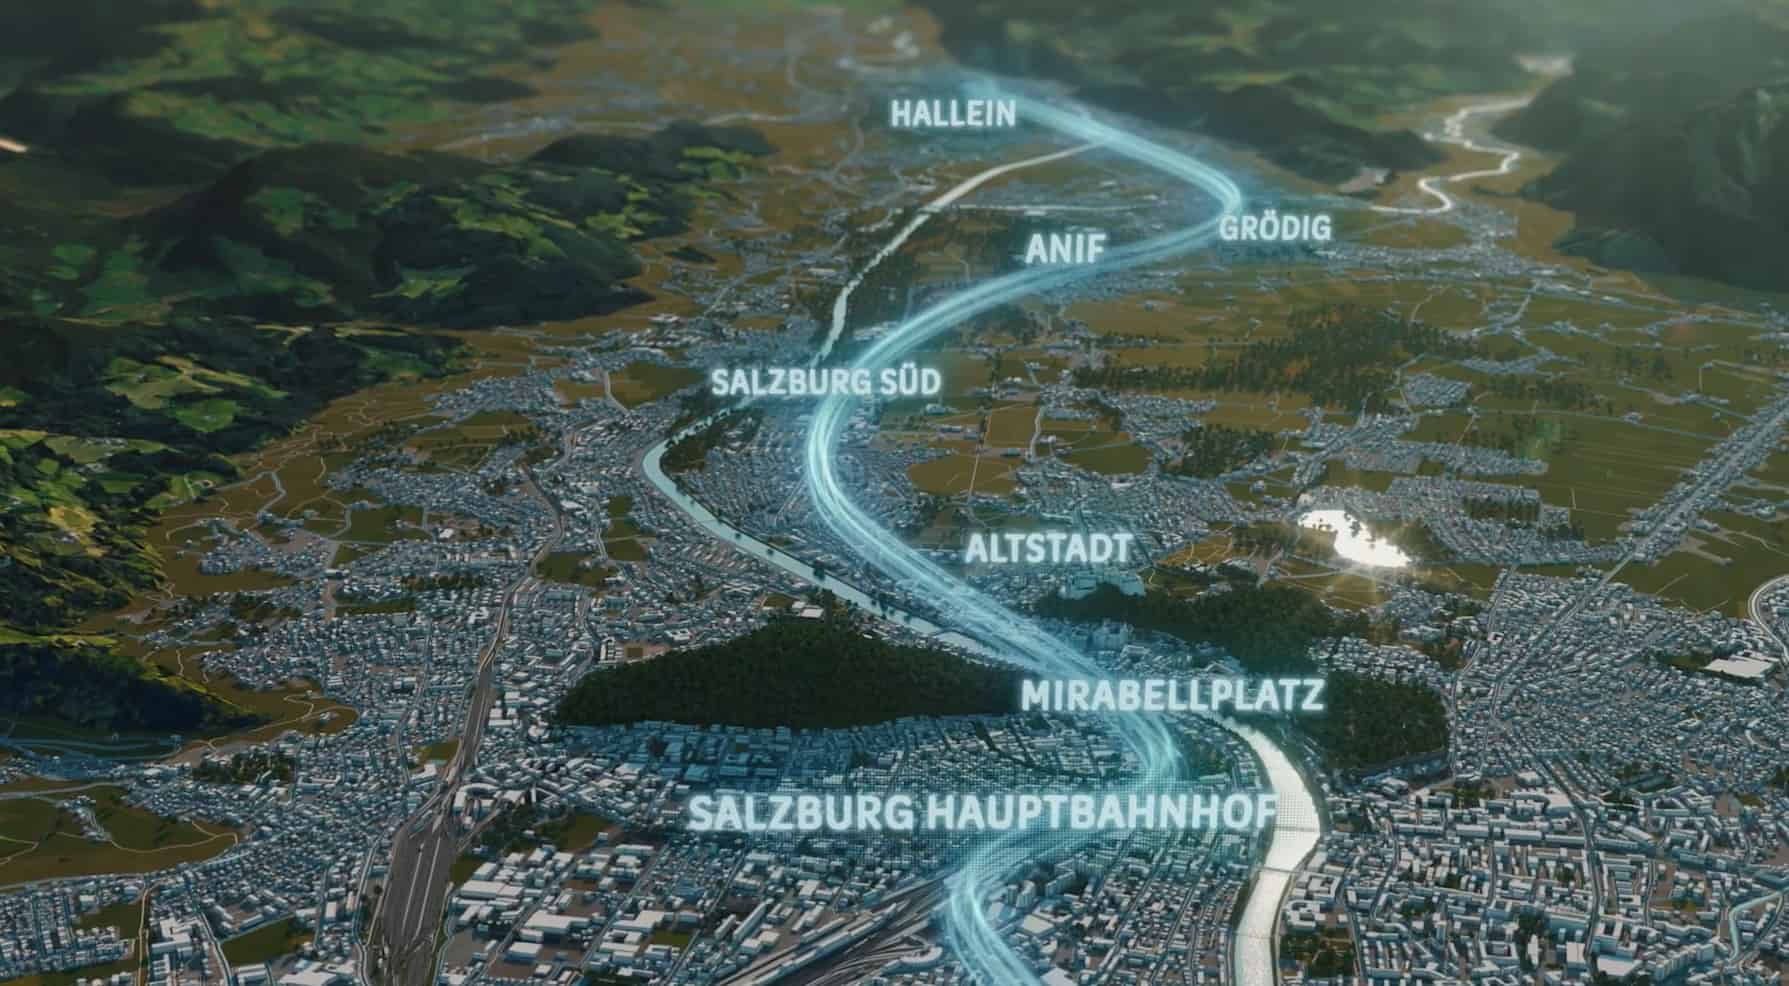 Salzburg-Hallein line